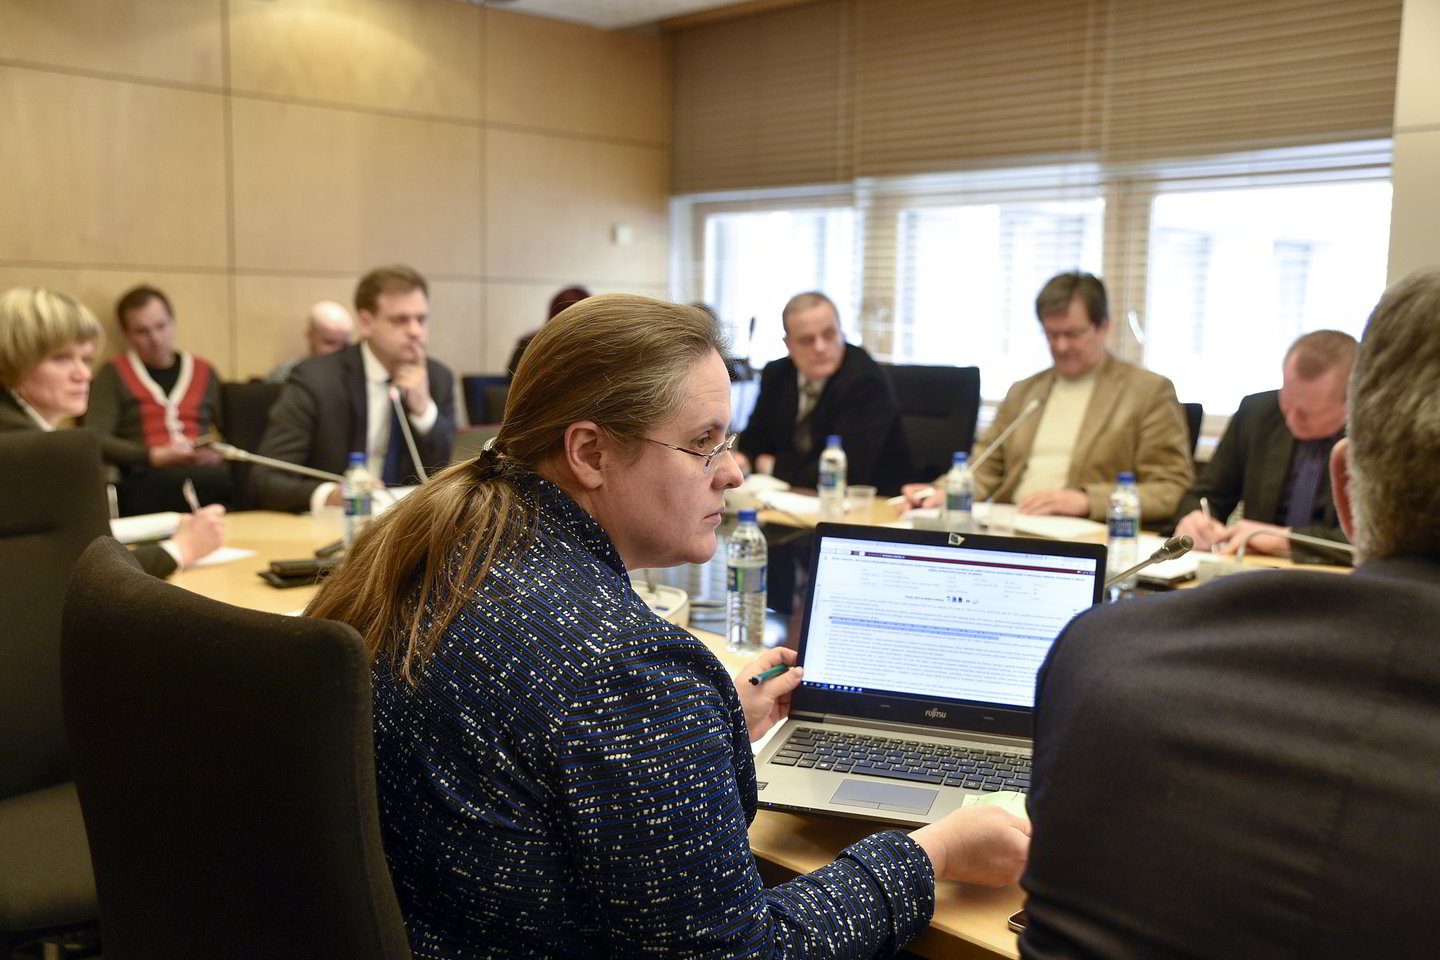  Seimo sprendimas sukurti komisiją, kuri vertintų LRT veiklą, kelia nerimą EBU.<br> V.Ščiavinsko nuotr.